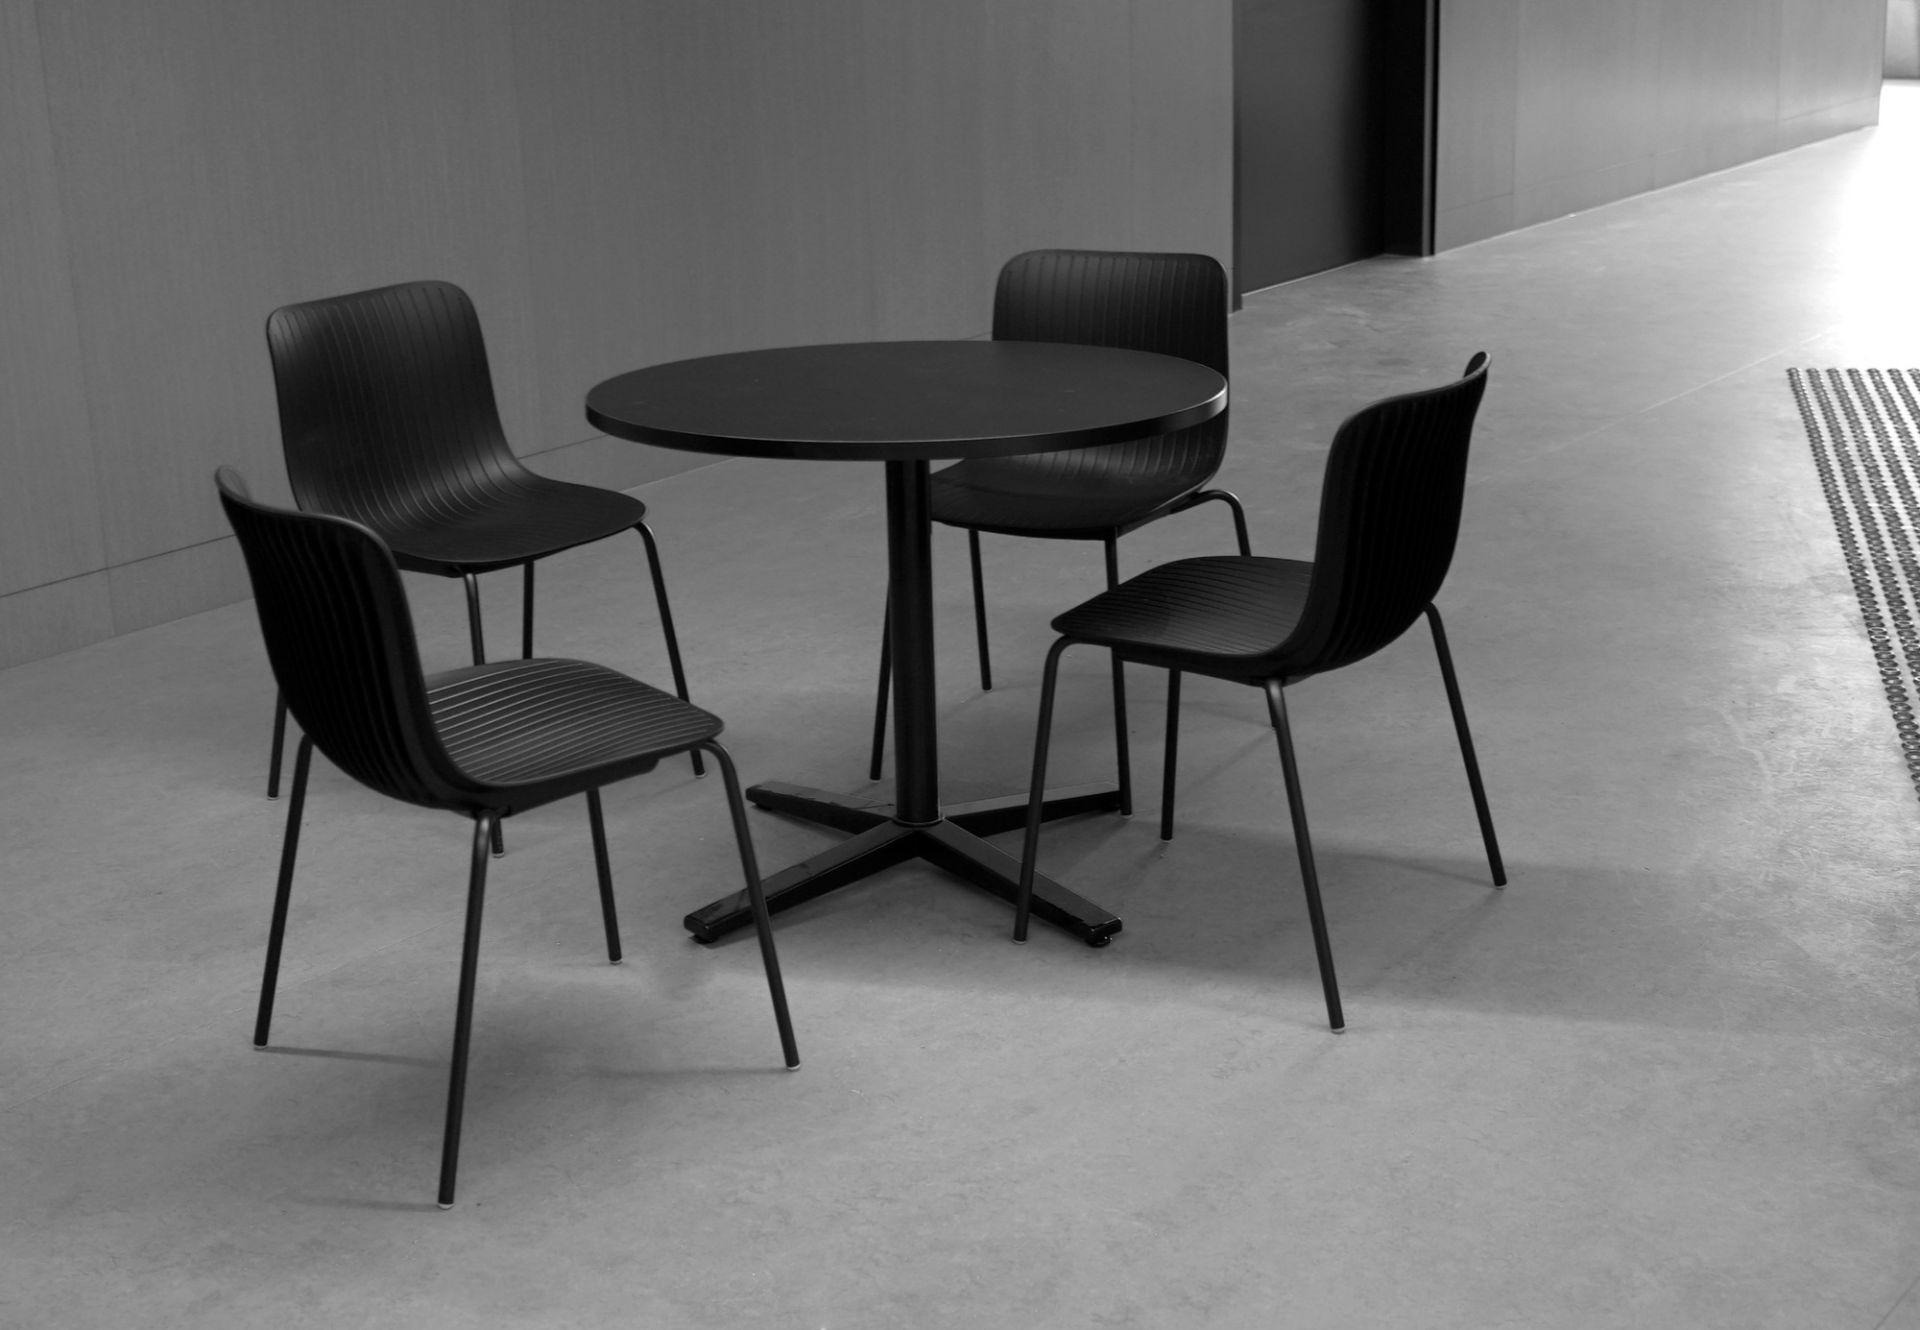 Ghế ăn Italia cao cấp Ghế bàn ăn thân nhựa Polypropylene chân thép sơn nhập khẩu LAVORO European Plastic Dining Chairs – Nội thất CAPTA